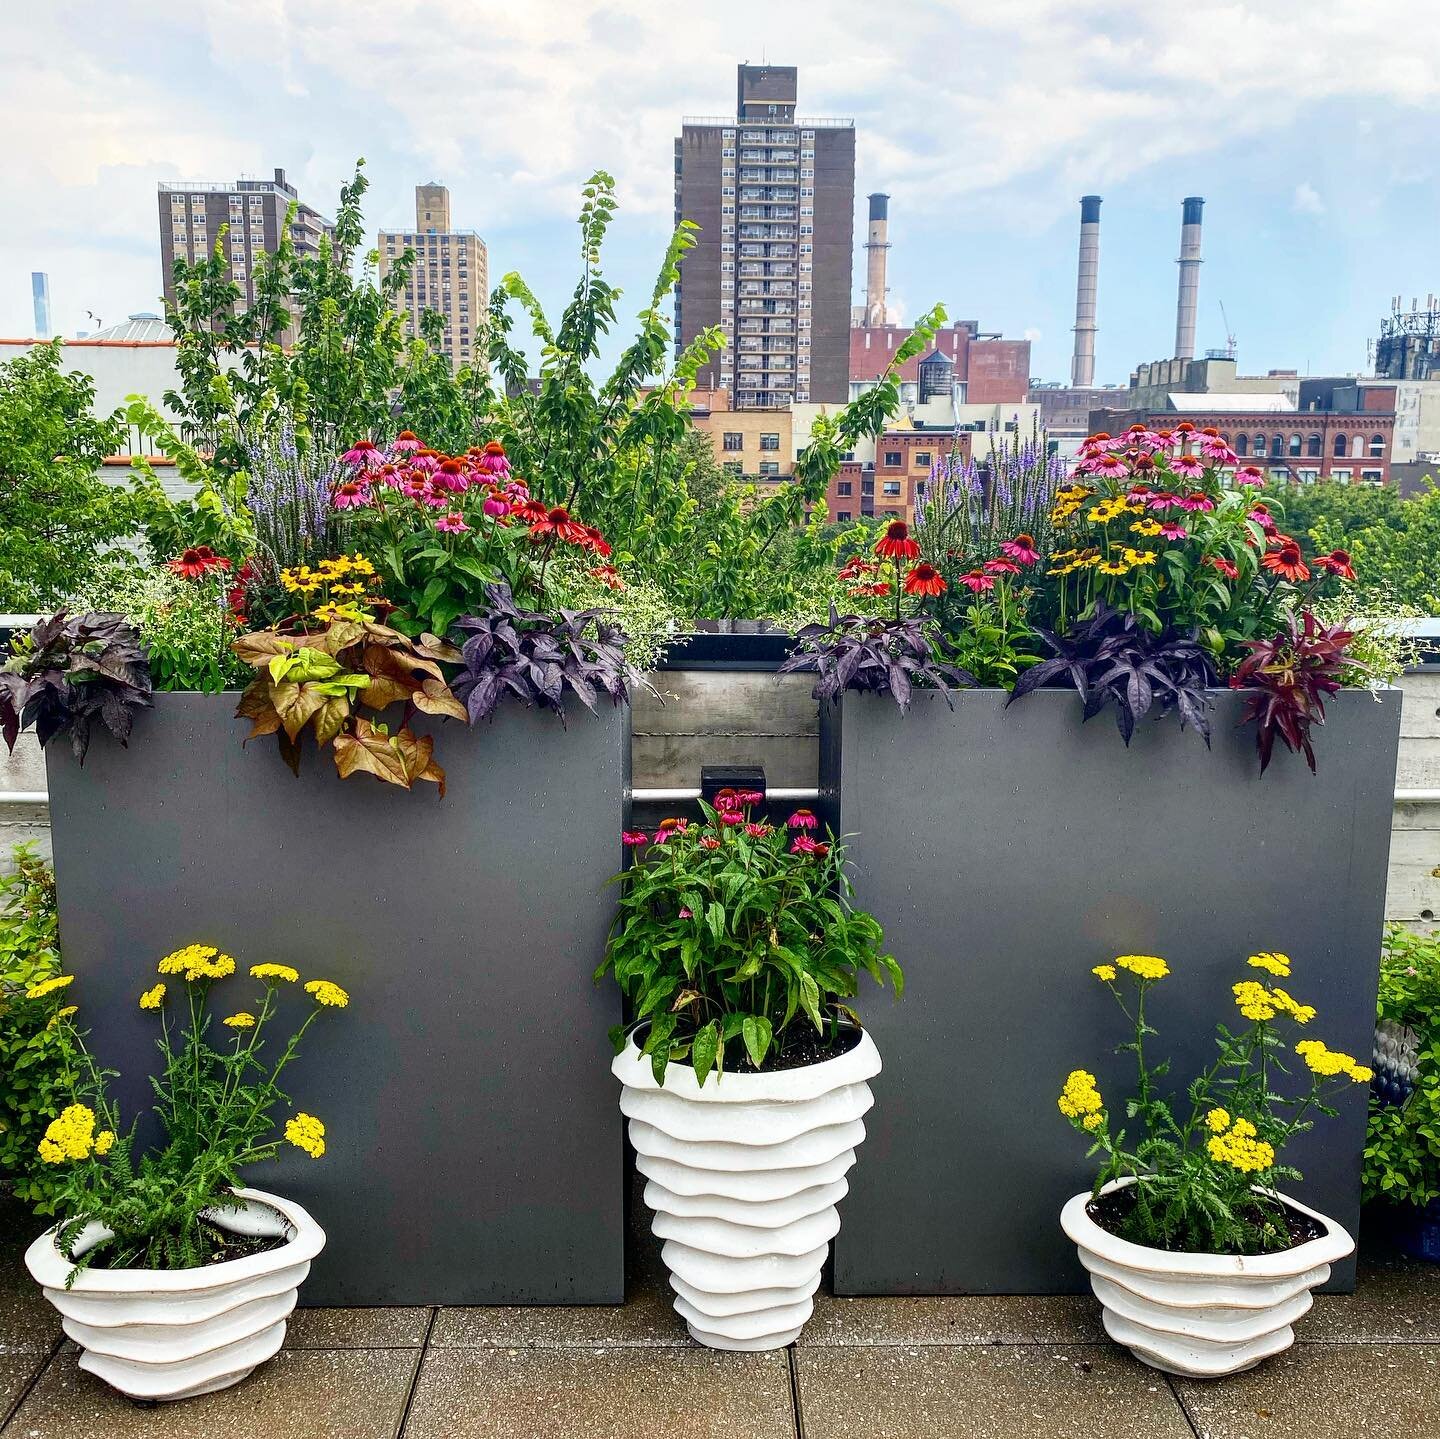 Rooftop garden installed!
🌸💐🌺🌻🌷
#flowerpower #containergardening #nyc #outdoorspaces #outdoorliving #summerinthecity #interiordesigner #exteriordesign #designer #plantpower #rooftopnyc #rooftop